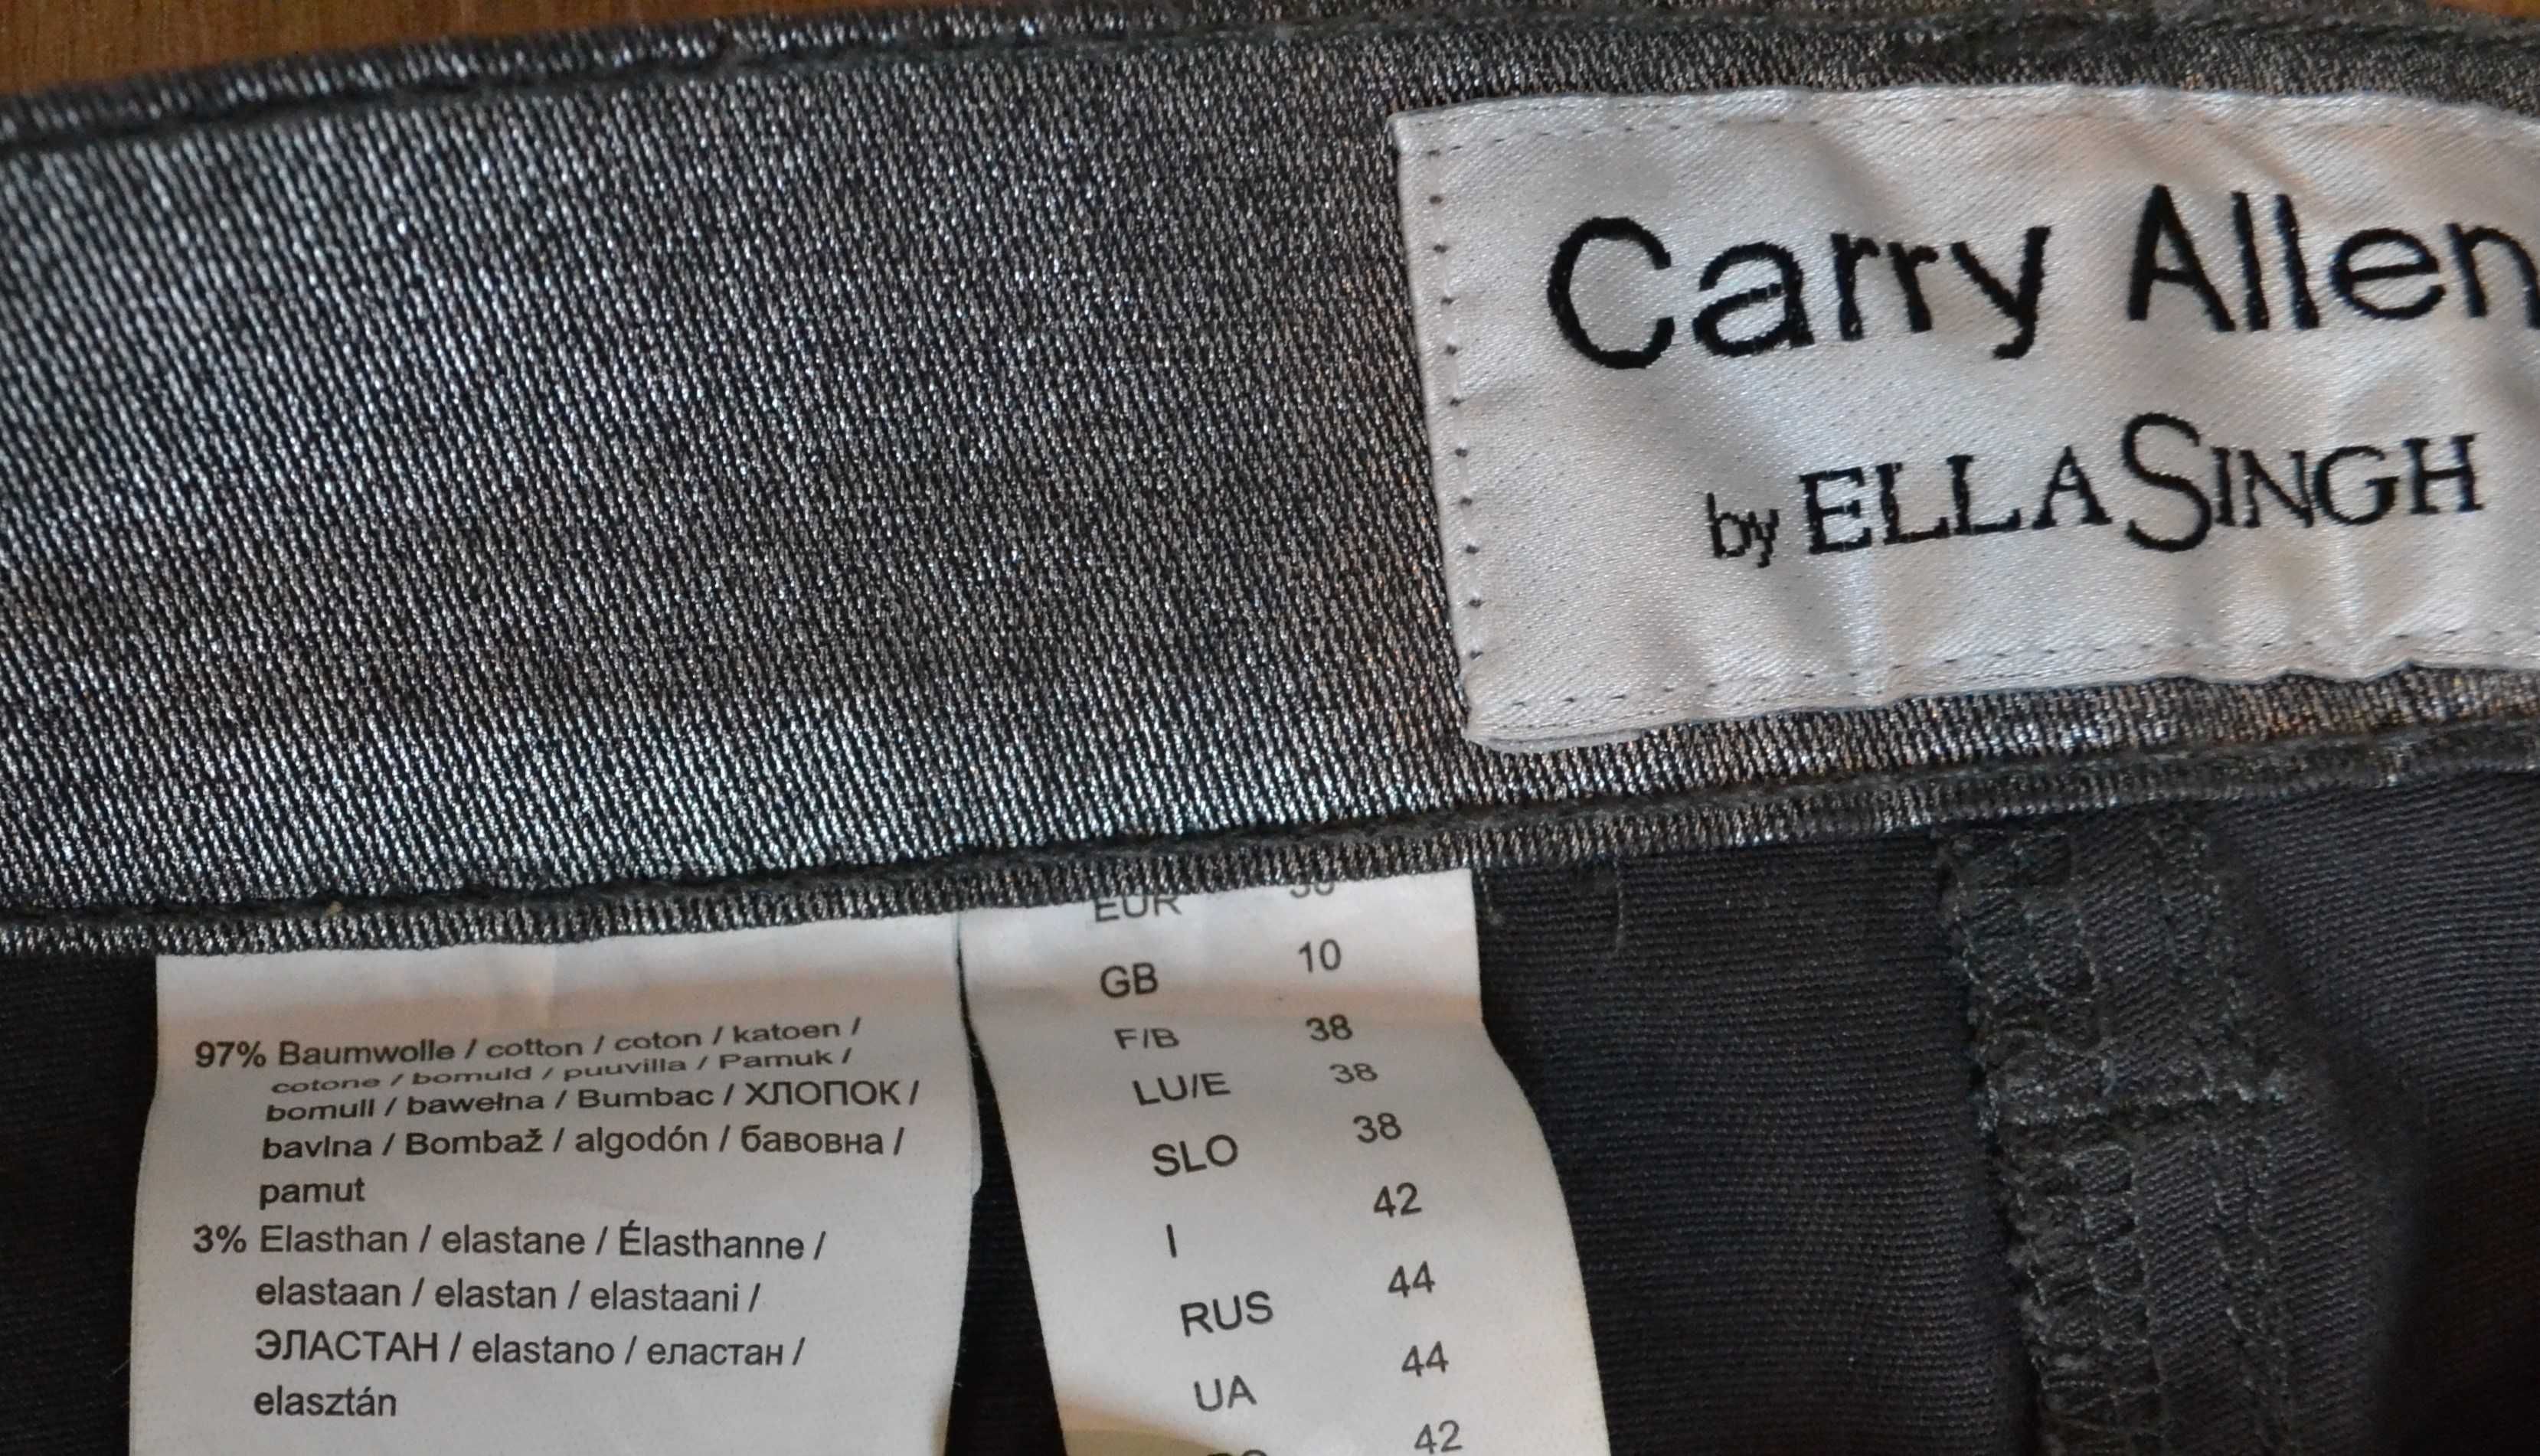 Spodnie damskie Carry Allen by Ella Singh, srebrne w rozmiarze 36.